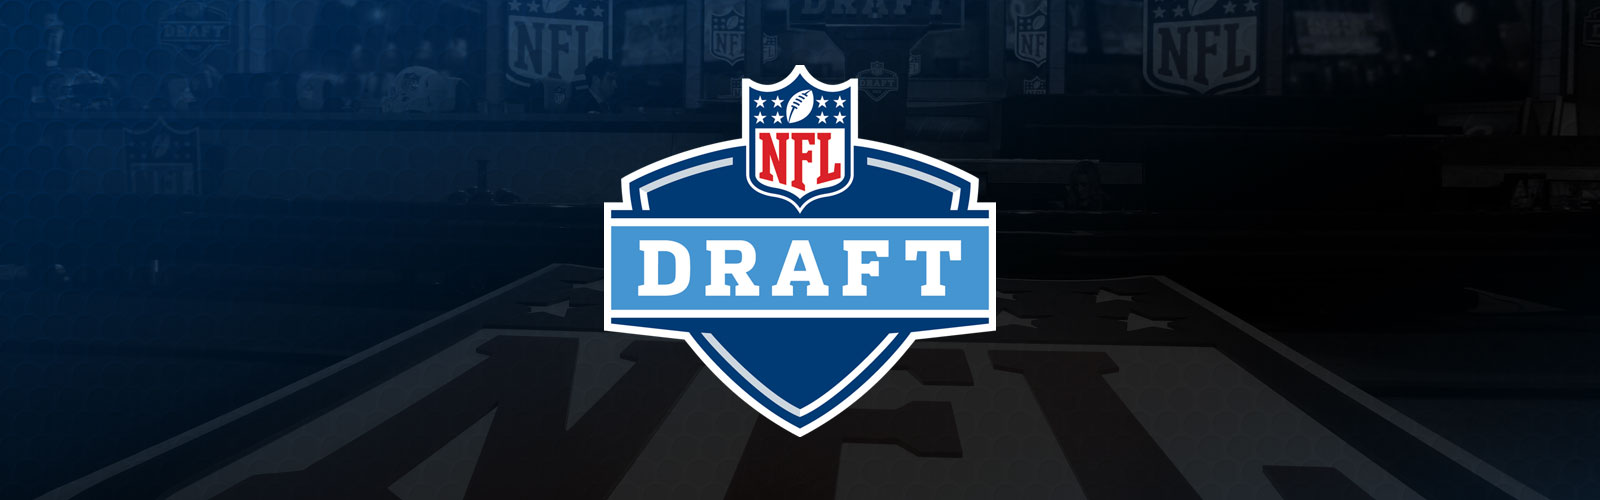 Free download nfl draft 2015 Large Image [1600x500] for your Desktop, Mobile & Tablet. Explore NFL Draft Wallpaper. Awesome NFL Wallpaper, NFL Football Wallpaper for Desktop, NFL Teams Wallpaper